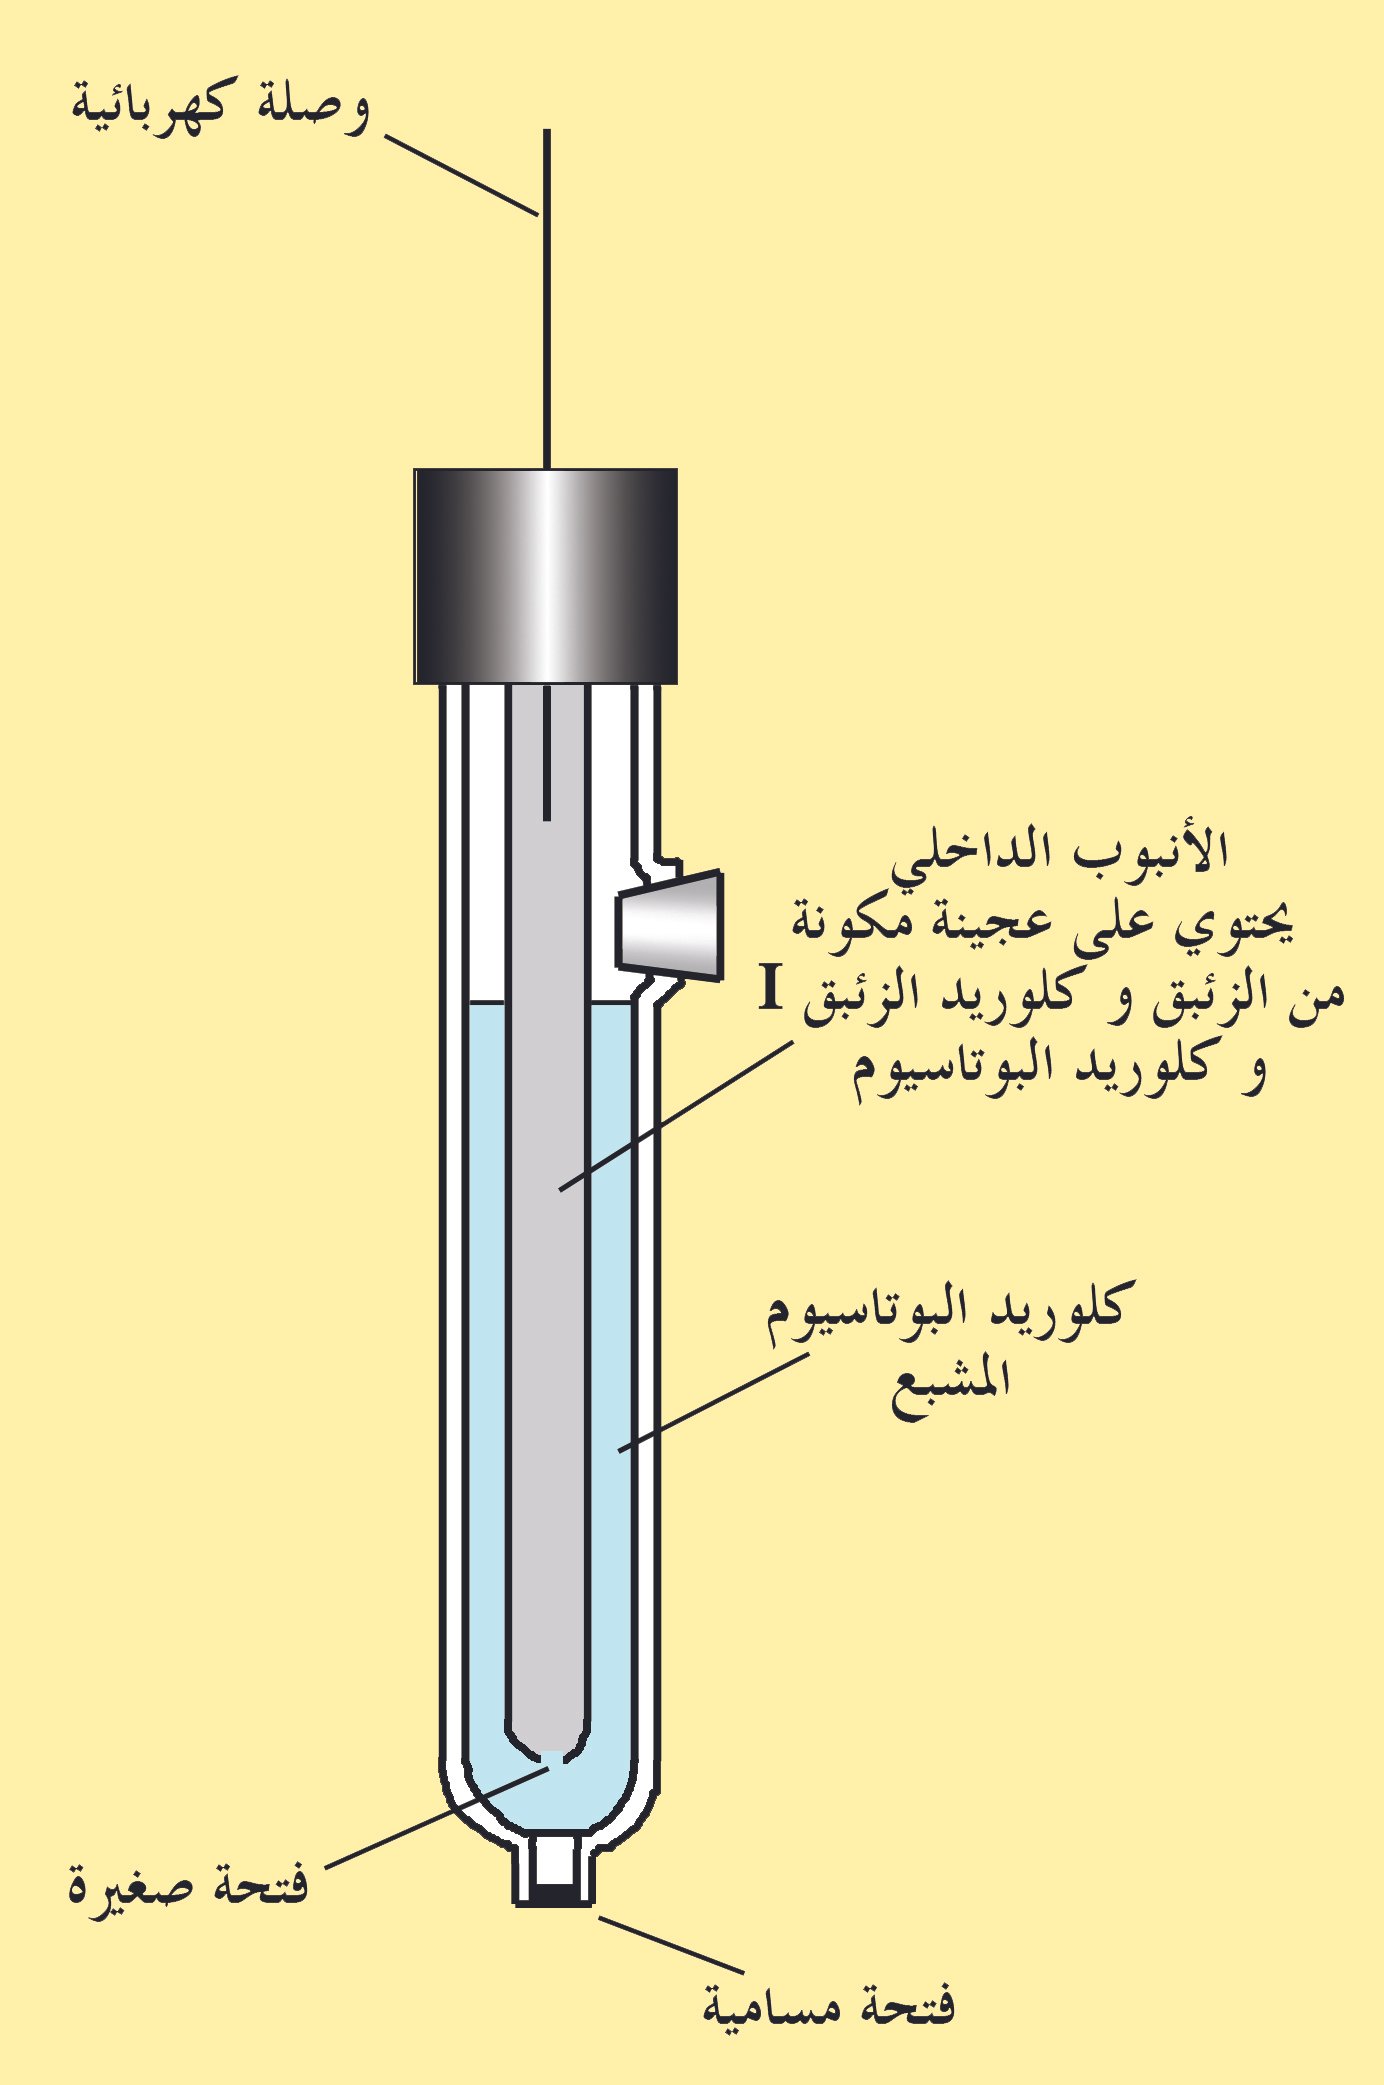 قطب كالوميل (كالومل) القياسي Saturated calomel electrode